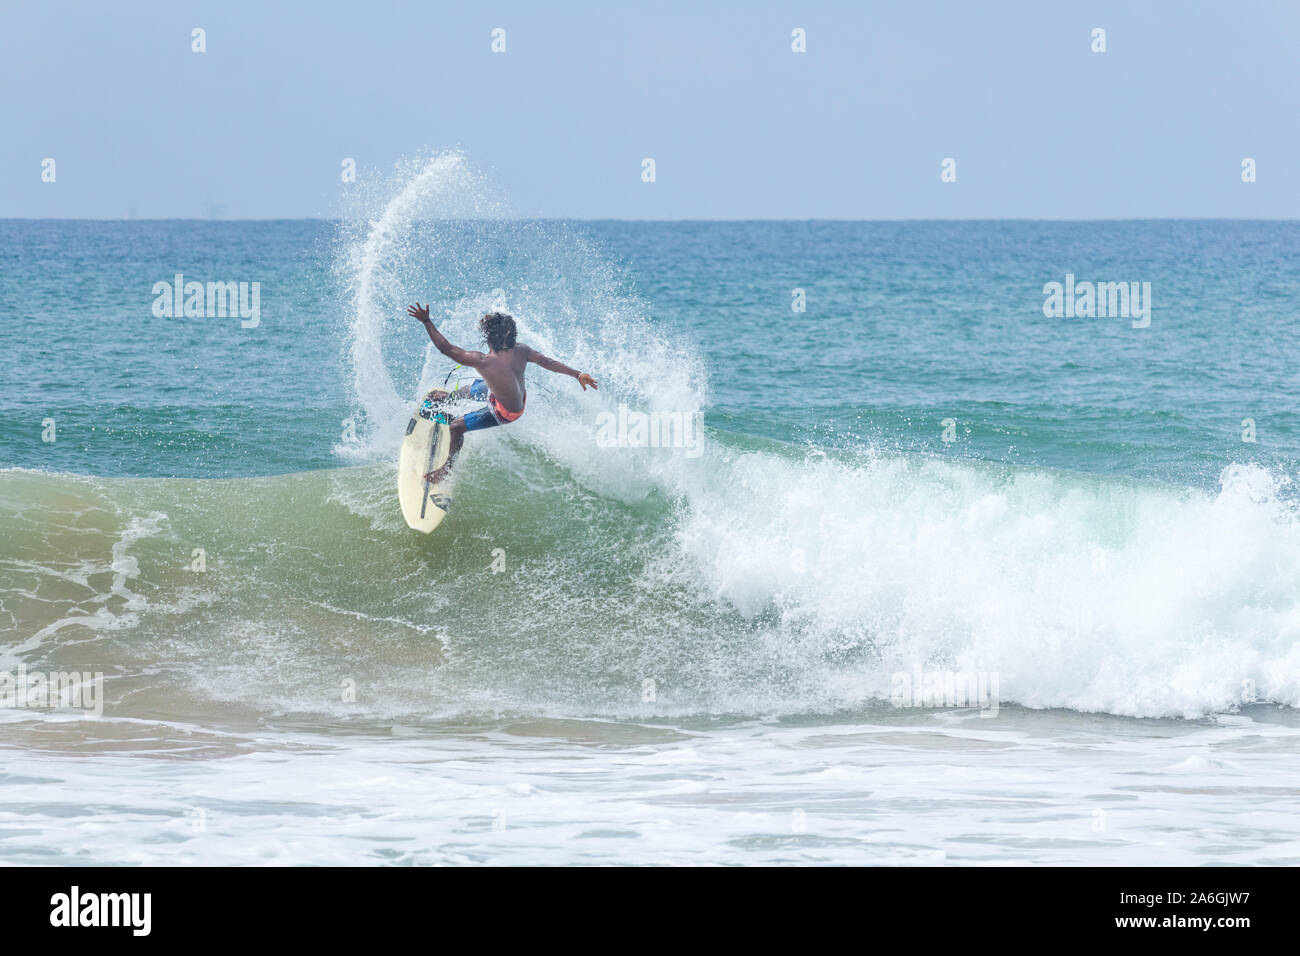 Hikkaduwa, Sri Lanka - 10/18/2019 - Pro surfer surfing at the Sri Lanka beach Stock Photo